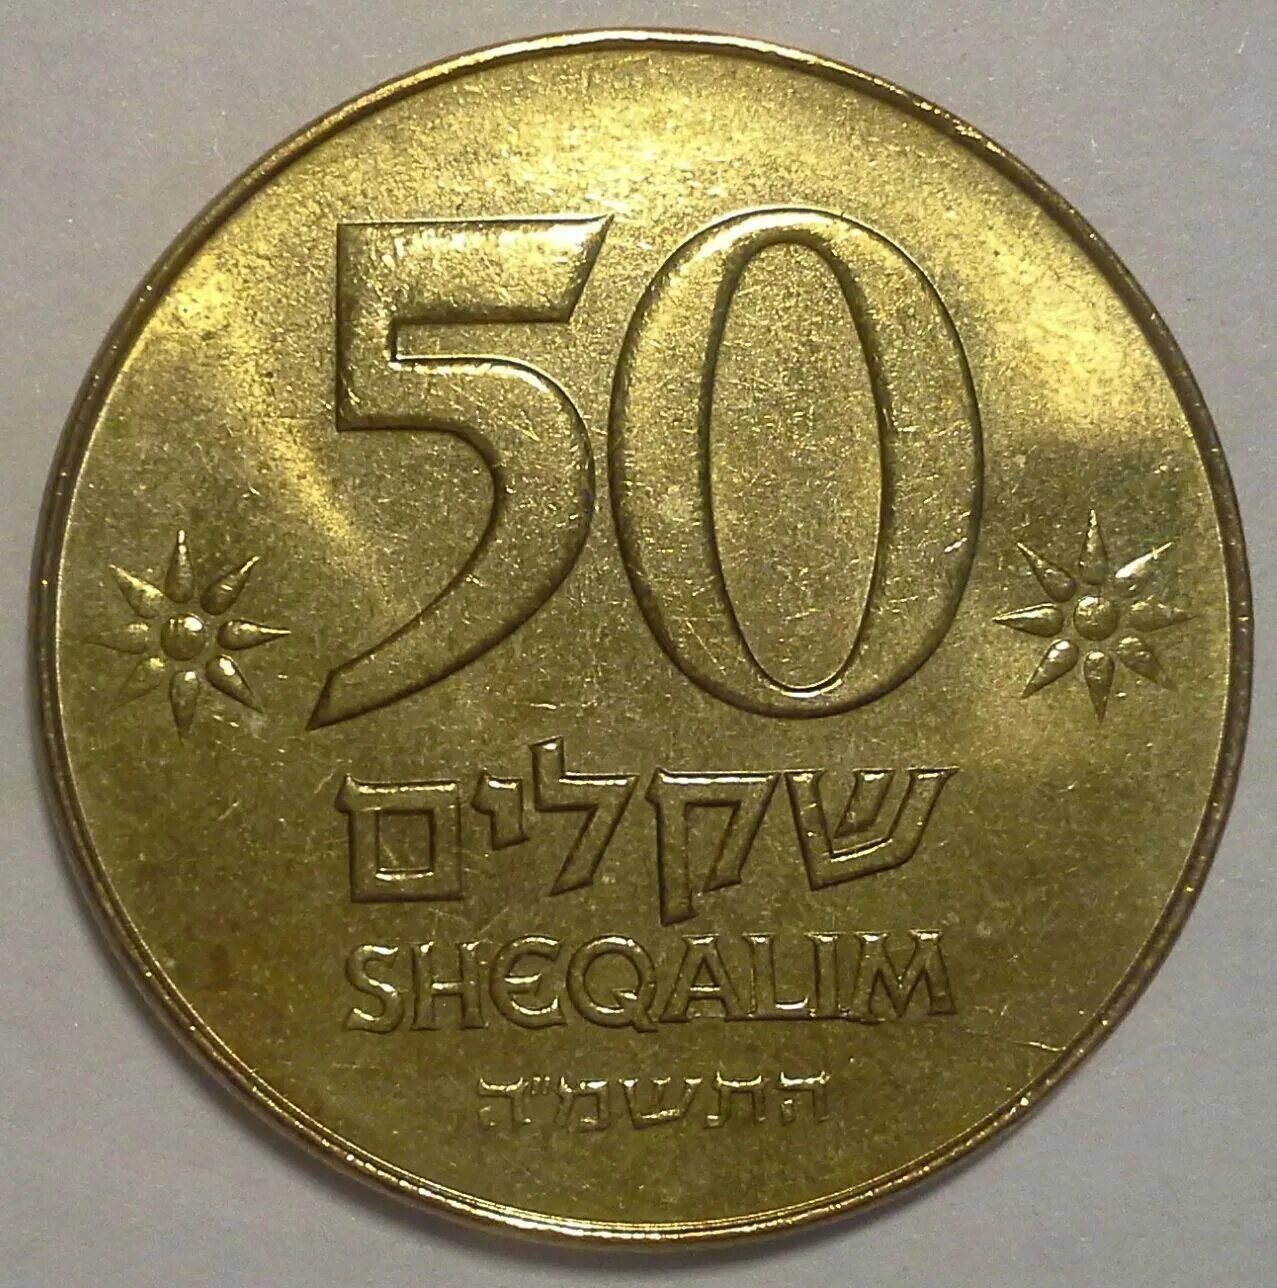 10 Шекелей монета. Валюта Израиля шекель. Денежная единица Израиля шекель. Руб шекель